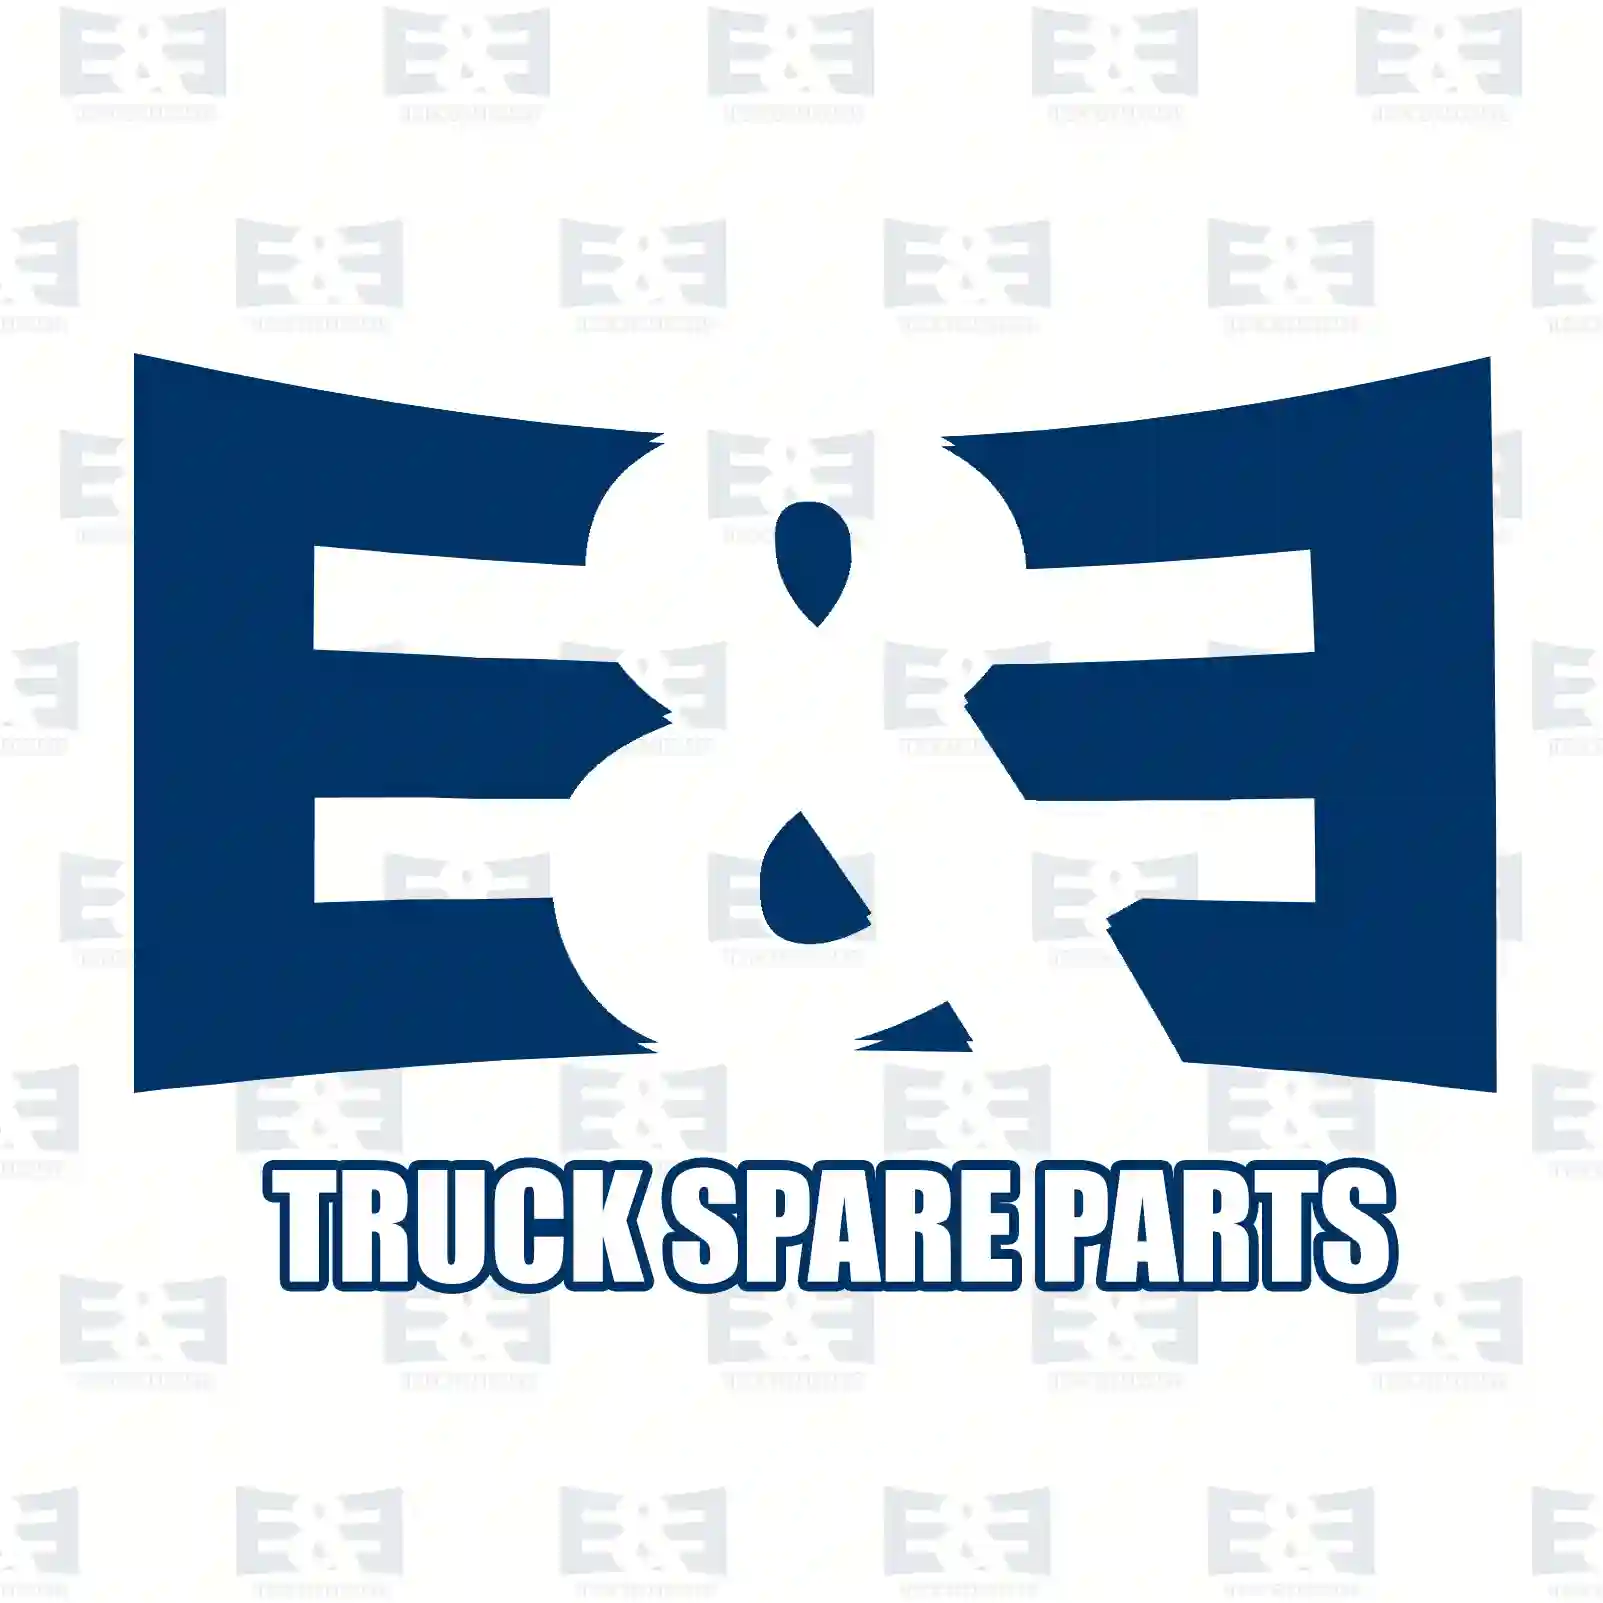 Screw, 2E2285986, JAE0020810008, 000000005261, 910105008008, , ||  2E2285986 E&E Truck Spare Parts | Truck Spare Parts, Auotomotive Spare Parts Screw, 2E2285986, JAE0020810008, 000000005261, 910105008008, , ||  2E2285986 E&E Truck Spare Parts | Truck Spare Parts, Auotomotive Spare Parts